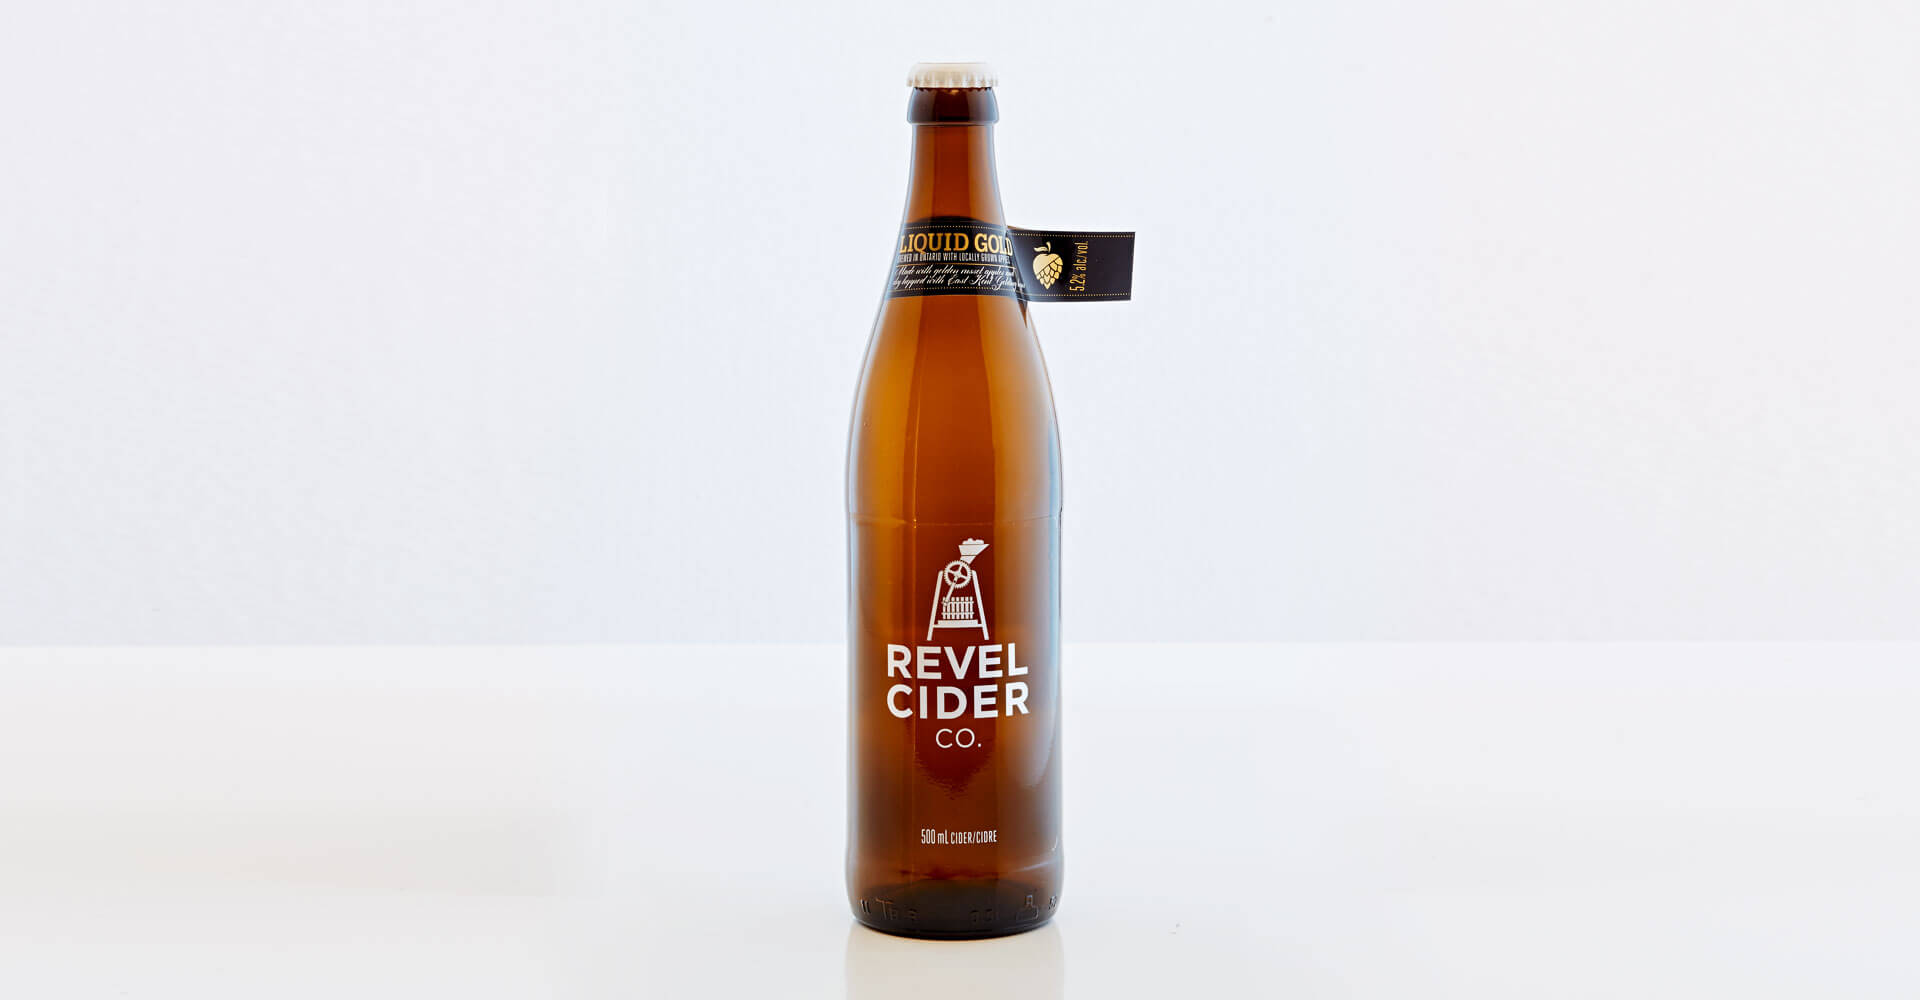 Revel Cider